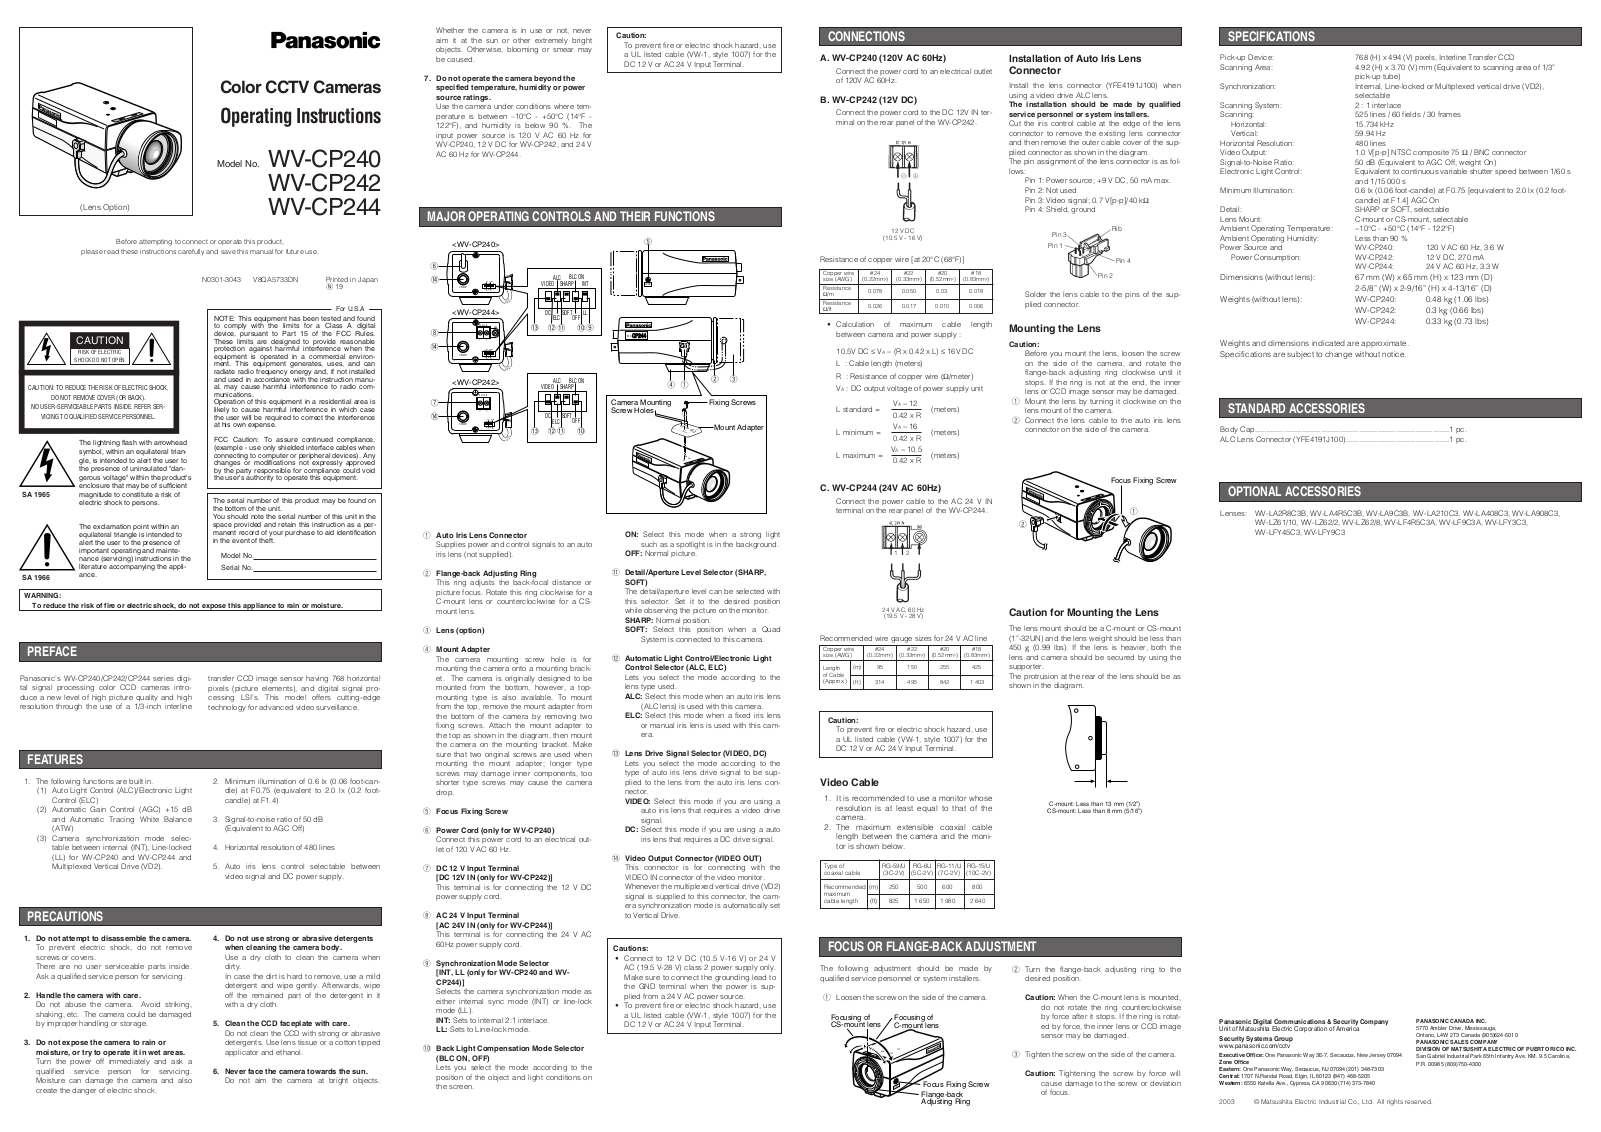 Panasonic WV-CP244, WV-CP242, WV-CP240 User Manual